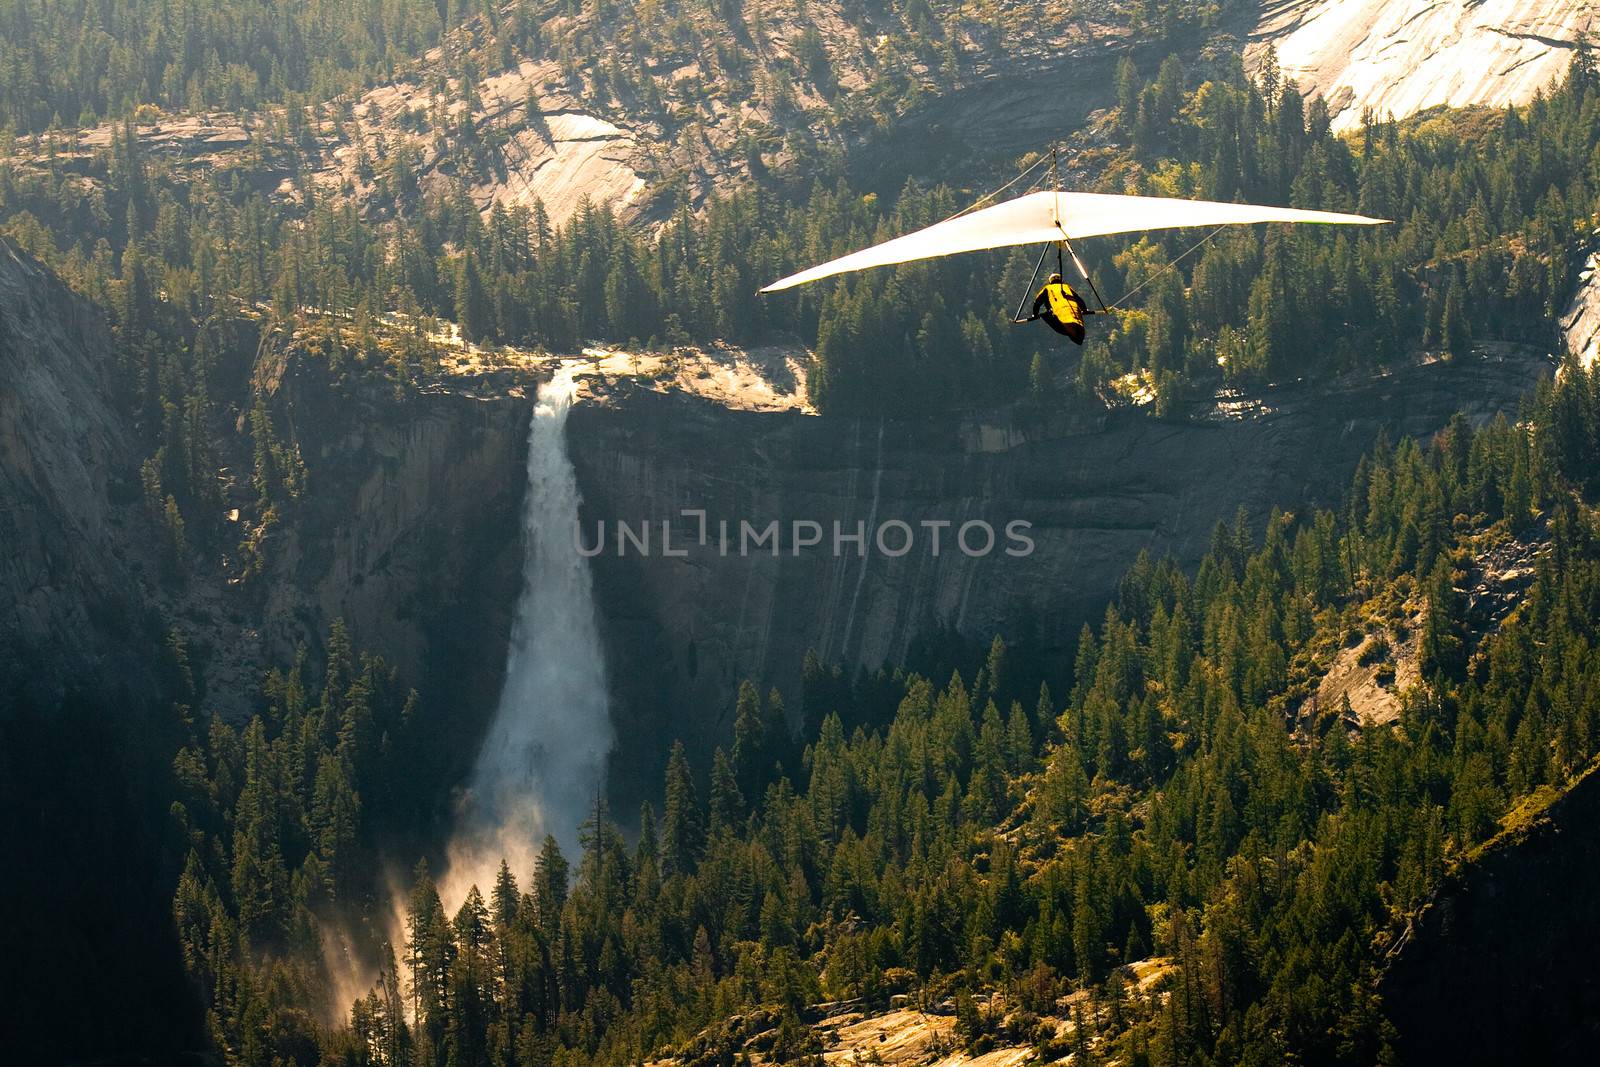 Yosemite National Park by CelsoDiniz